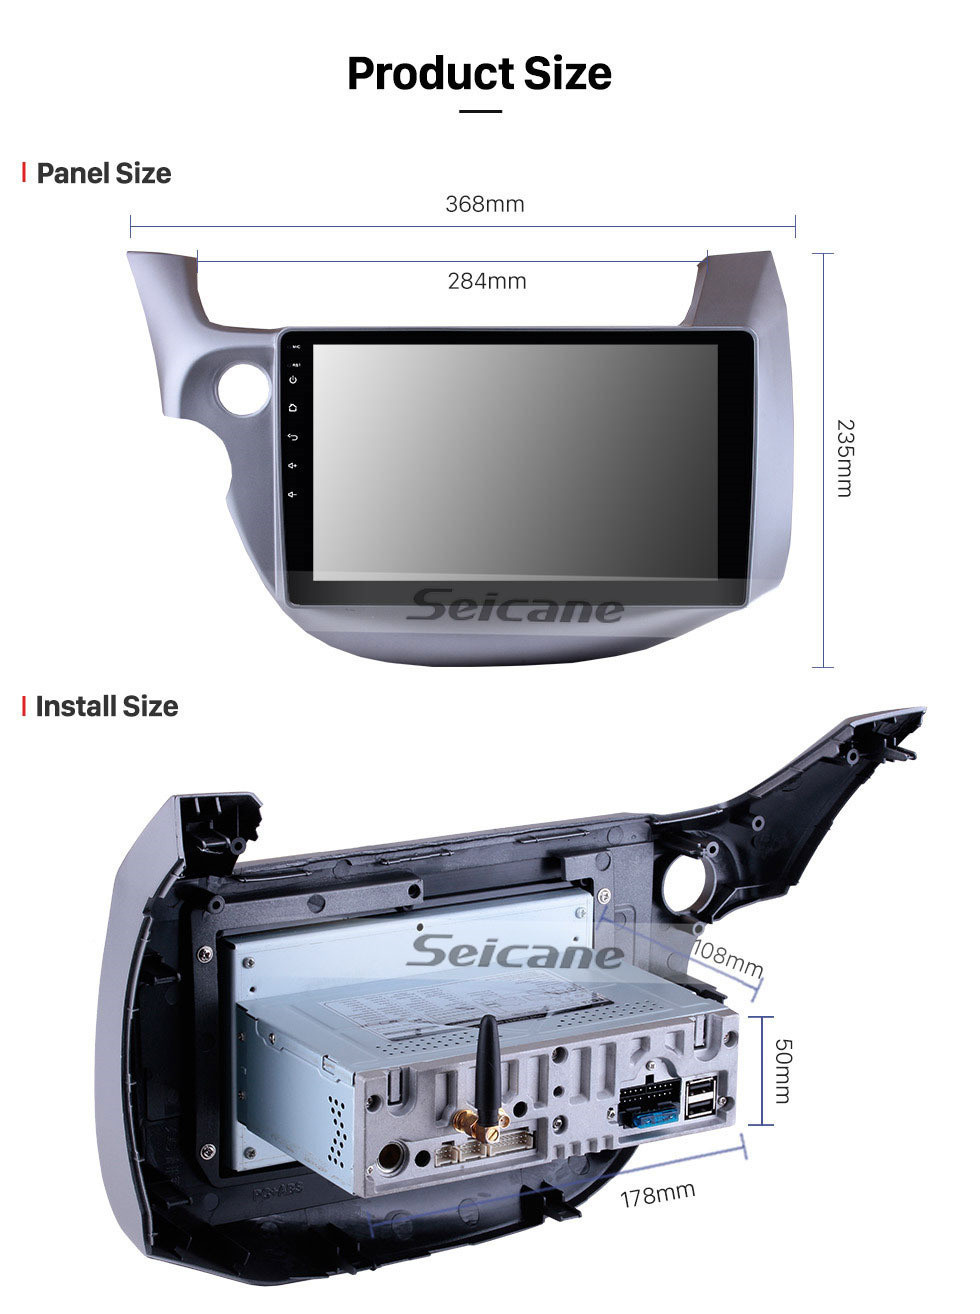 Seicane 2007-2013 Honda Fit (LHD) Android 11.0 10.1 pulgadas Sistema de navegación GPS con radio Bluetooth OBD2 Cámara de respaldo TV digital Volante Control Espejo Enlace